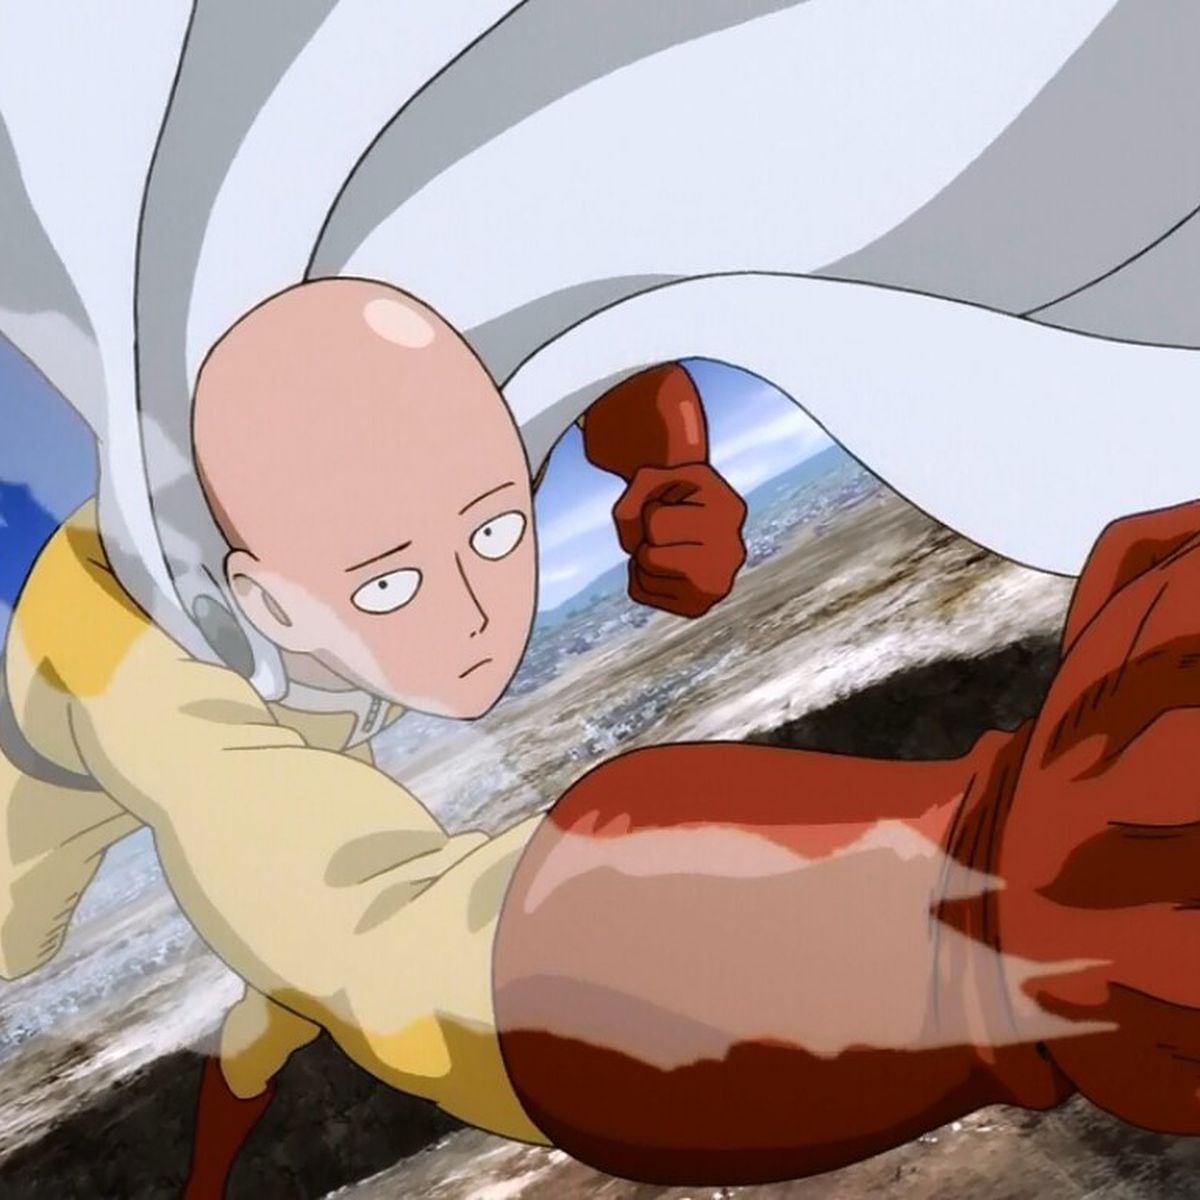 Conheça 'One Punch Man', anime que estreou na Netflix sobre um